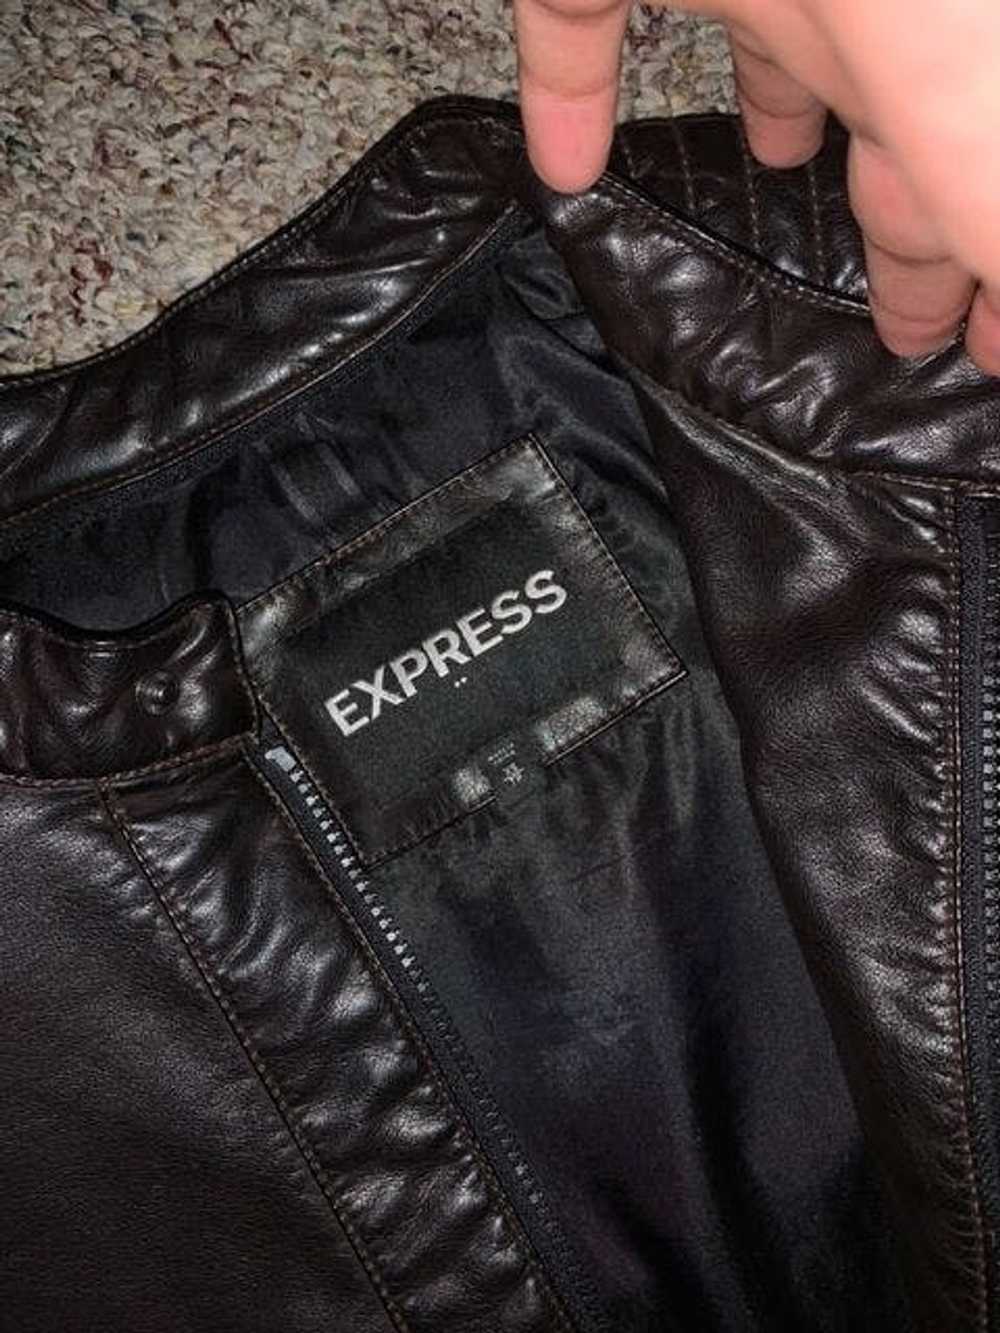 Express Express Leather Jacket - image 4